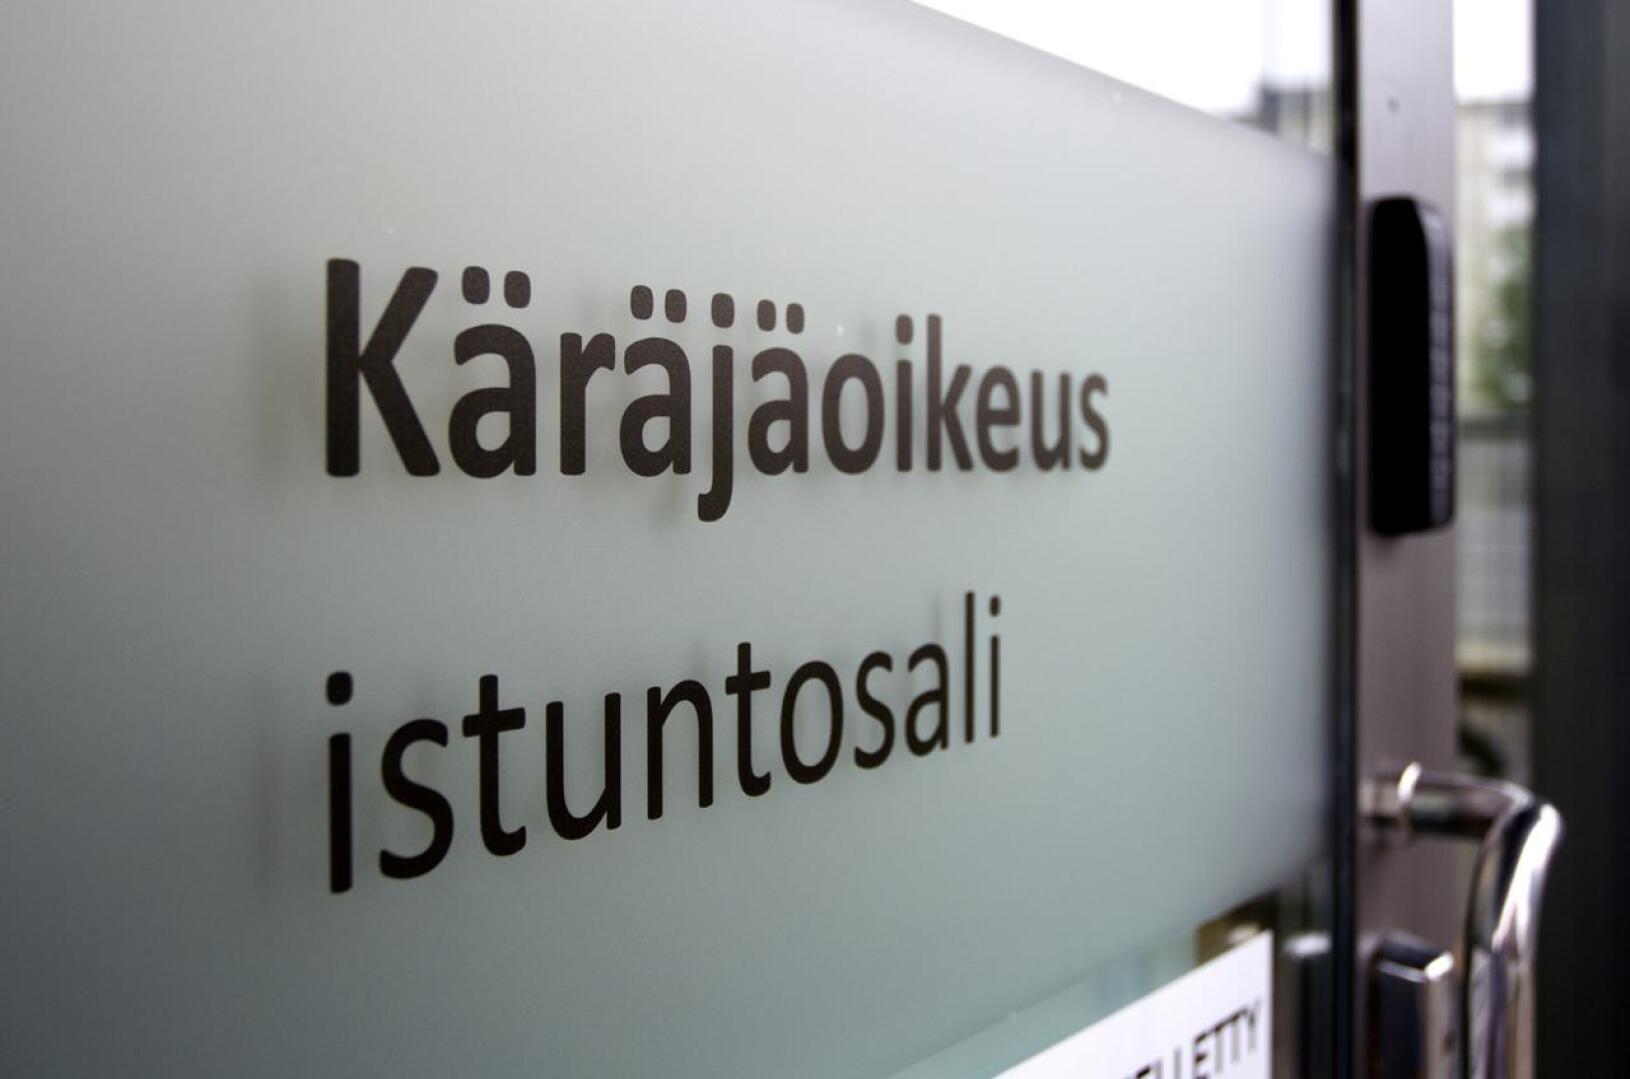 Oulun käräjäoikeus tuomitsi vankeutta vuonna 1982 syntyneelle miehelle. Käräjätuomio tuli useista rikoksista. 